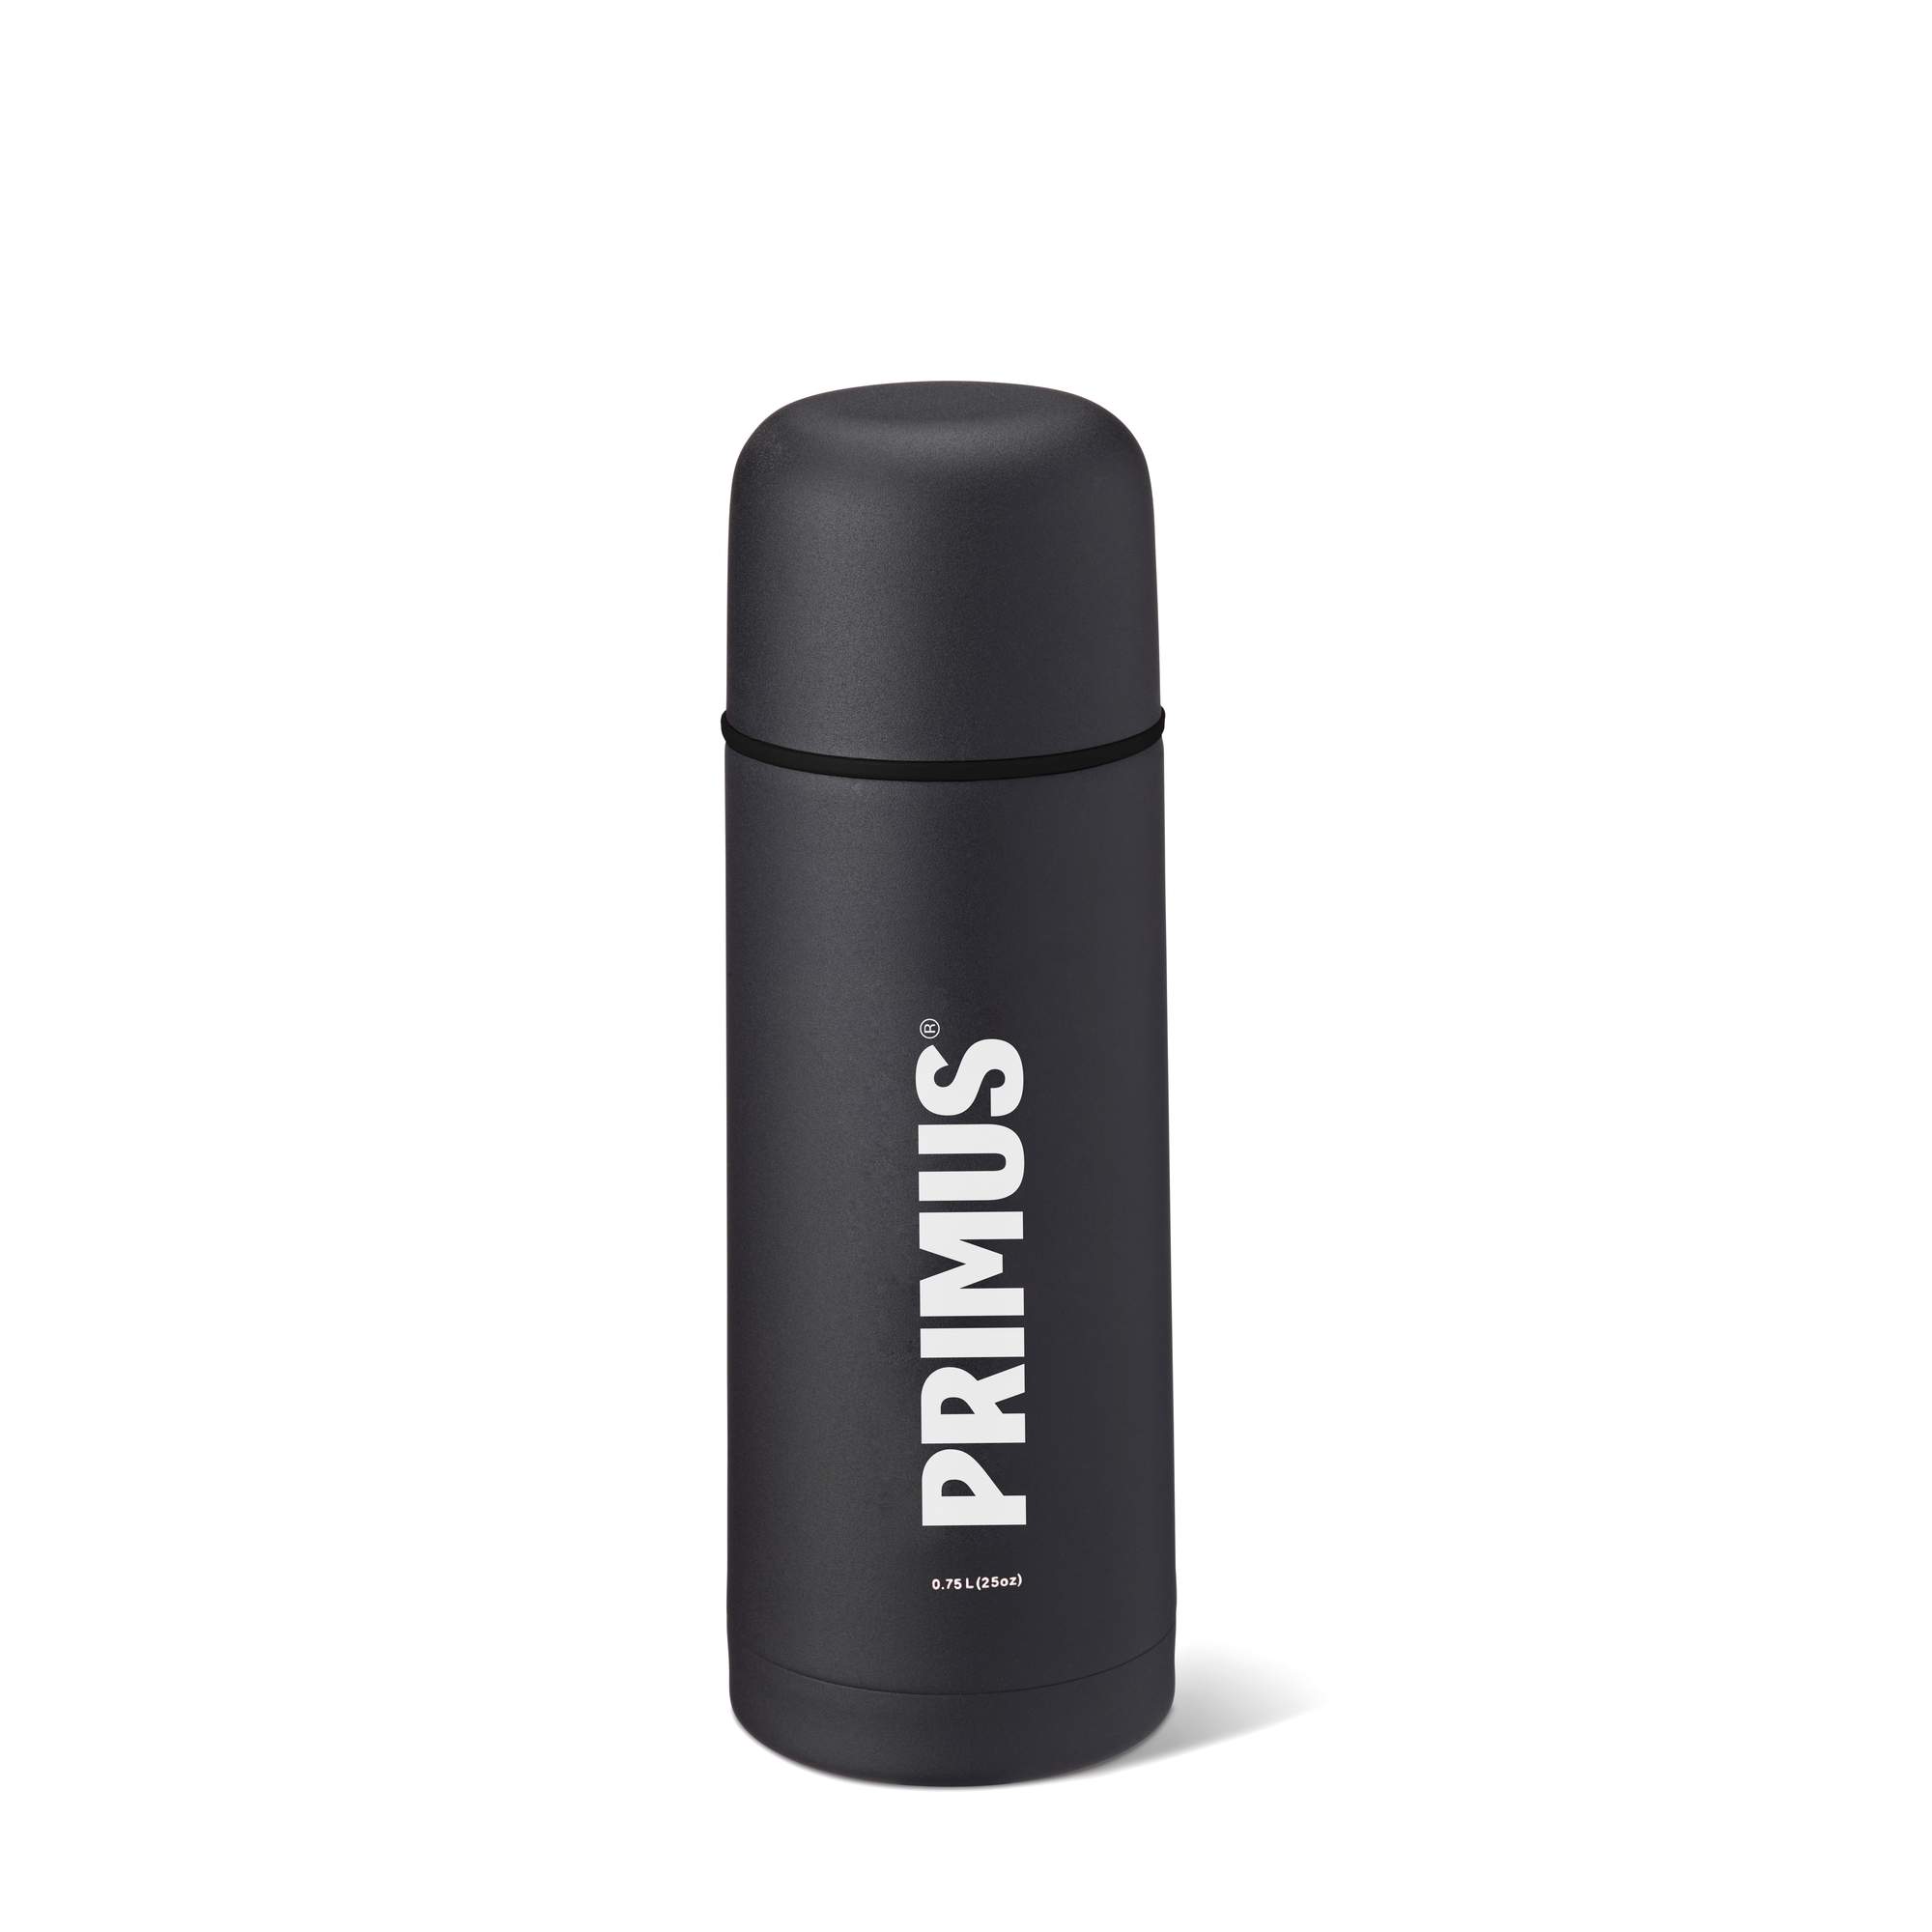 Immagine di Primus - Bottiglia isolante sottovuoto 750 ml